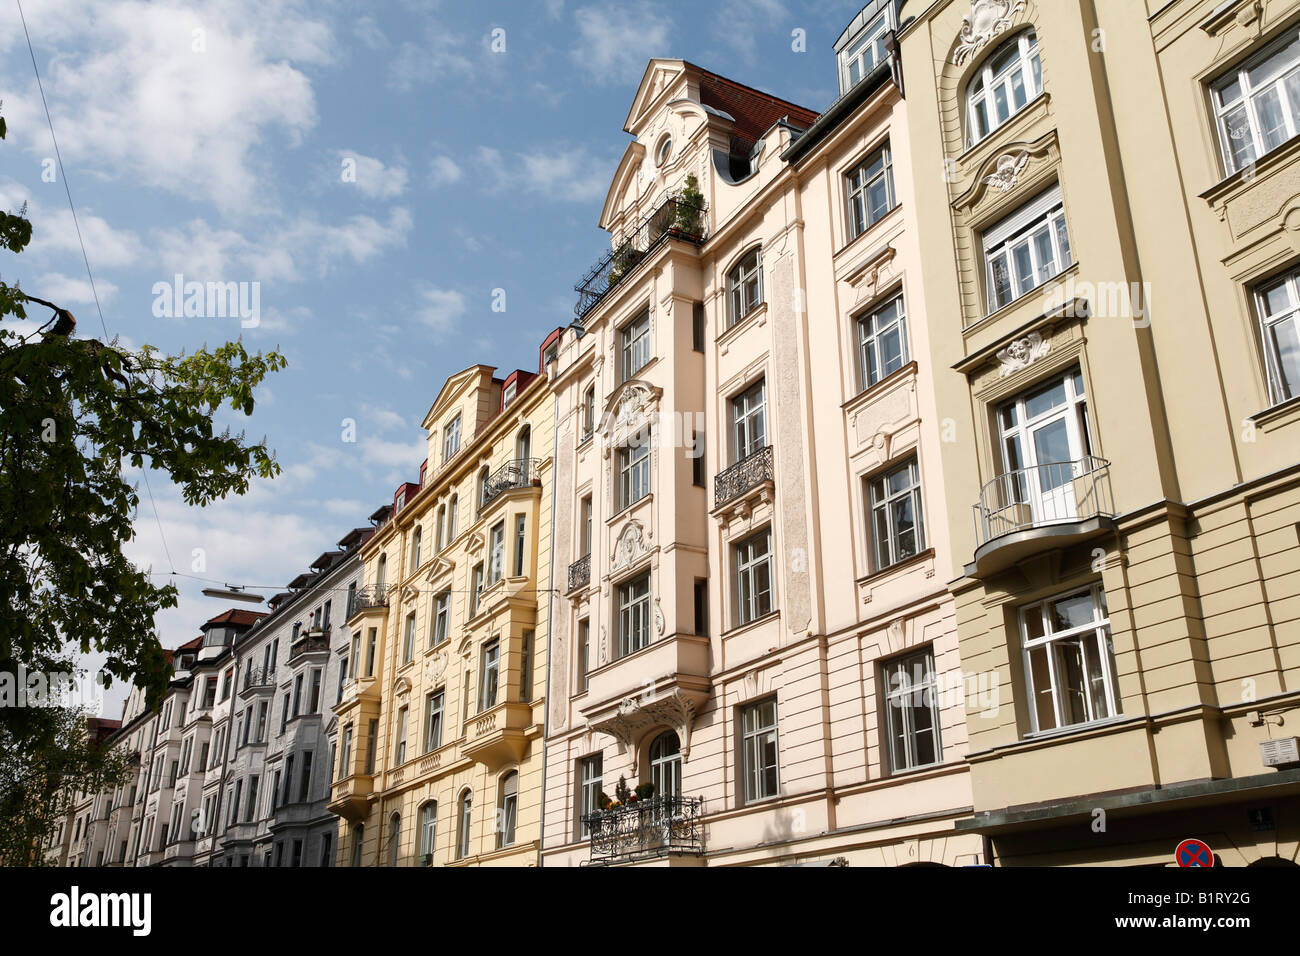 House fronts in Hans-Sachs-Strasse, Isarvorstadt, Glockenbachviertel, Munich, Bavaria, Germany, Europe Stock Photo